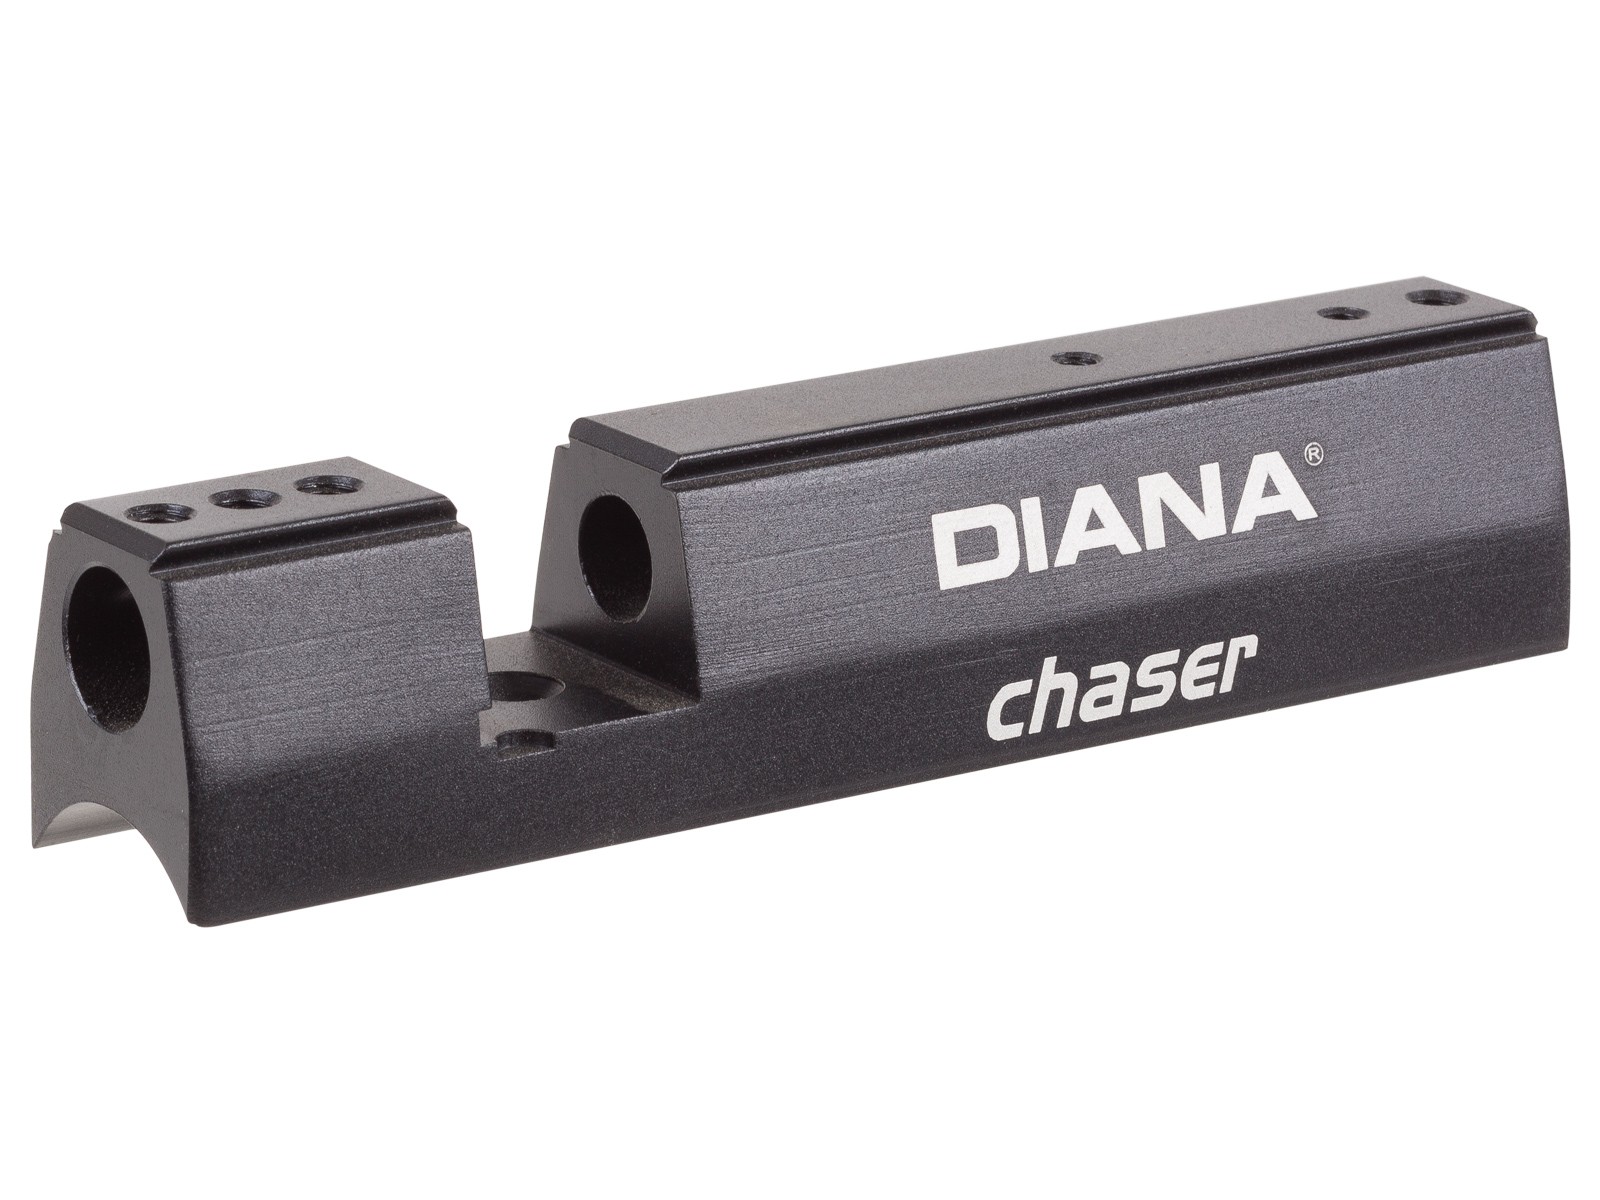 Diana Chaser Breech Block, .177 Left-Handed